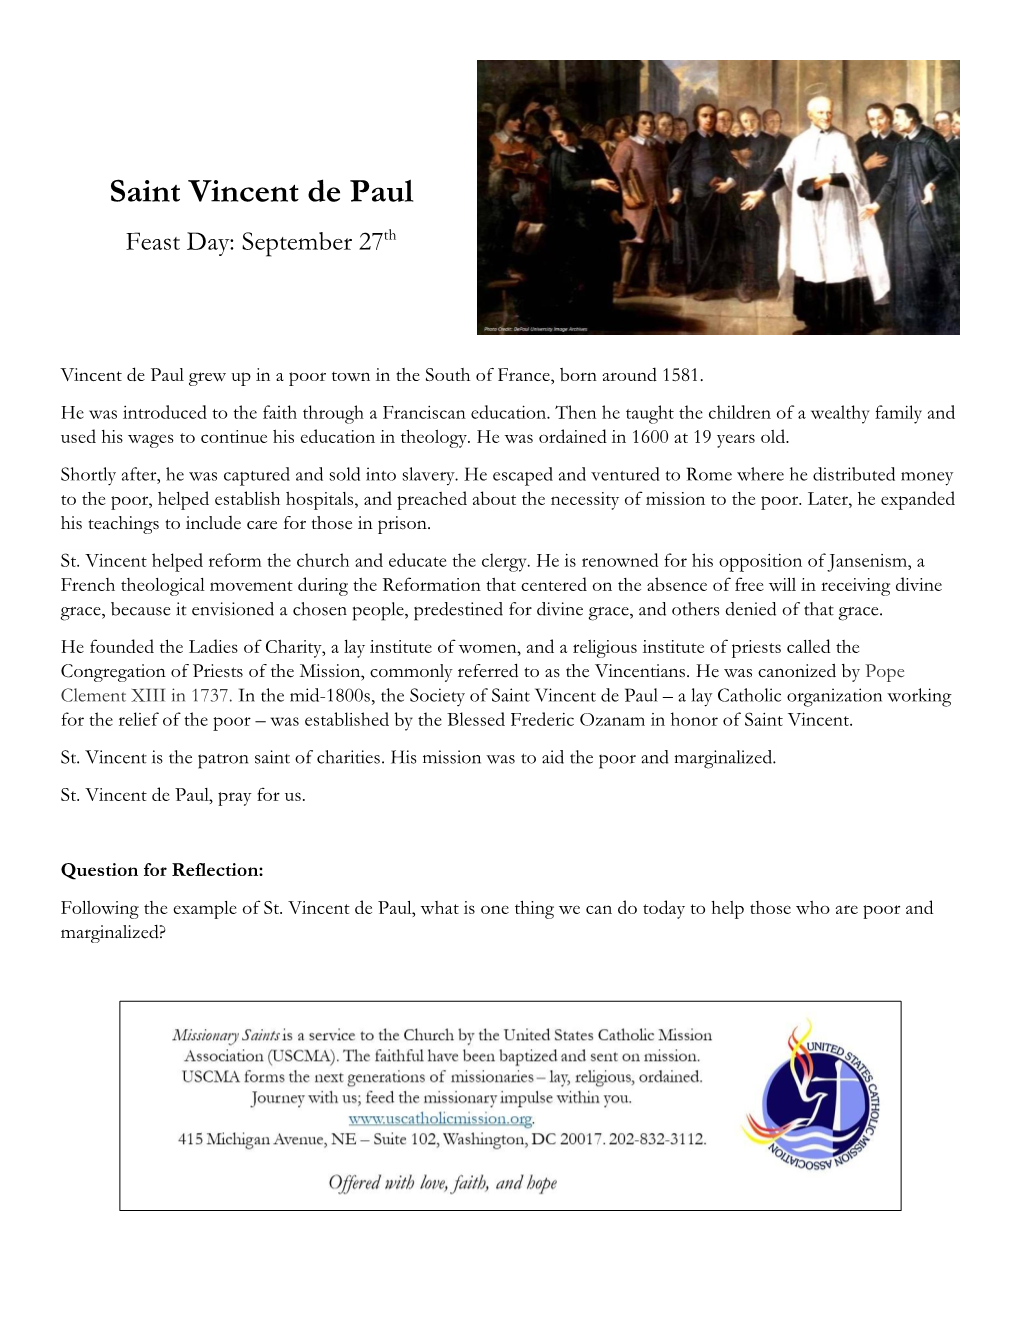 St. Vincent De Paul, Pray for Us